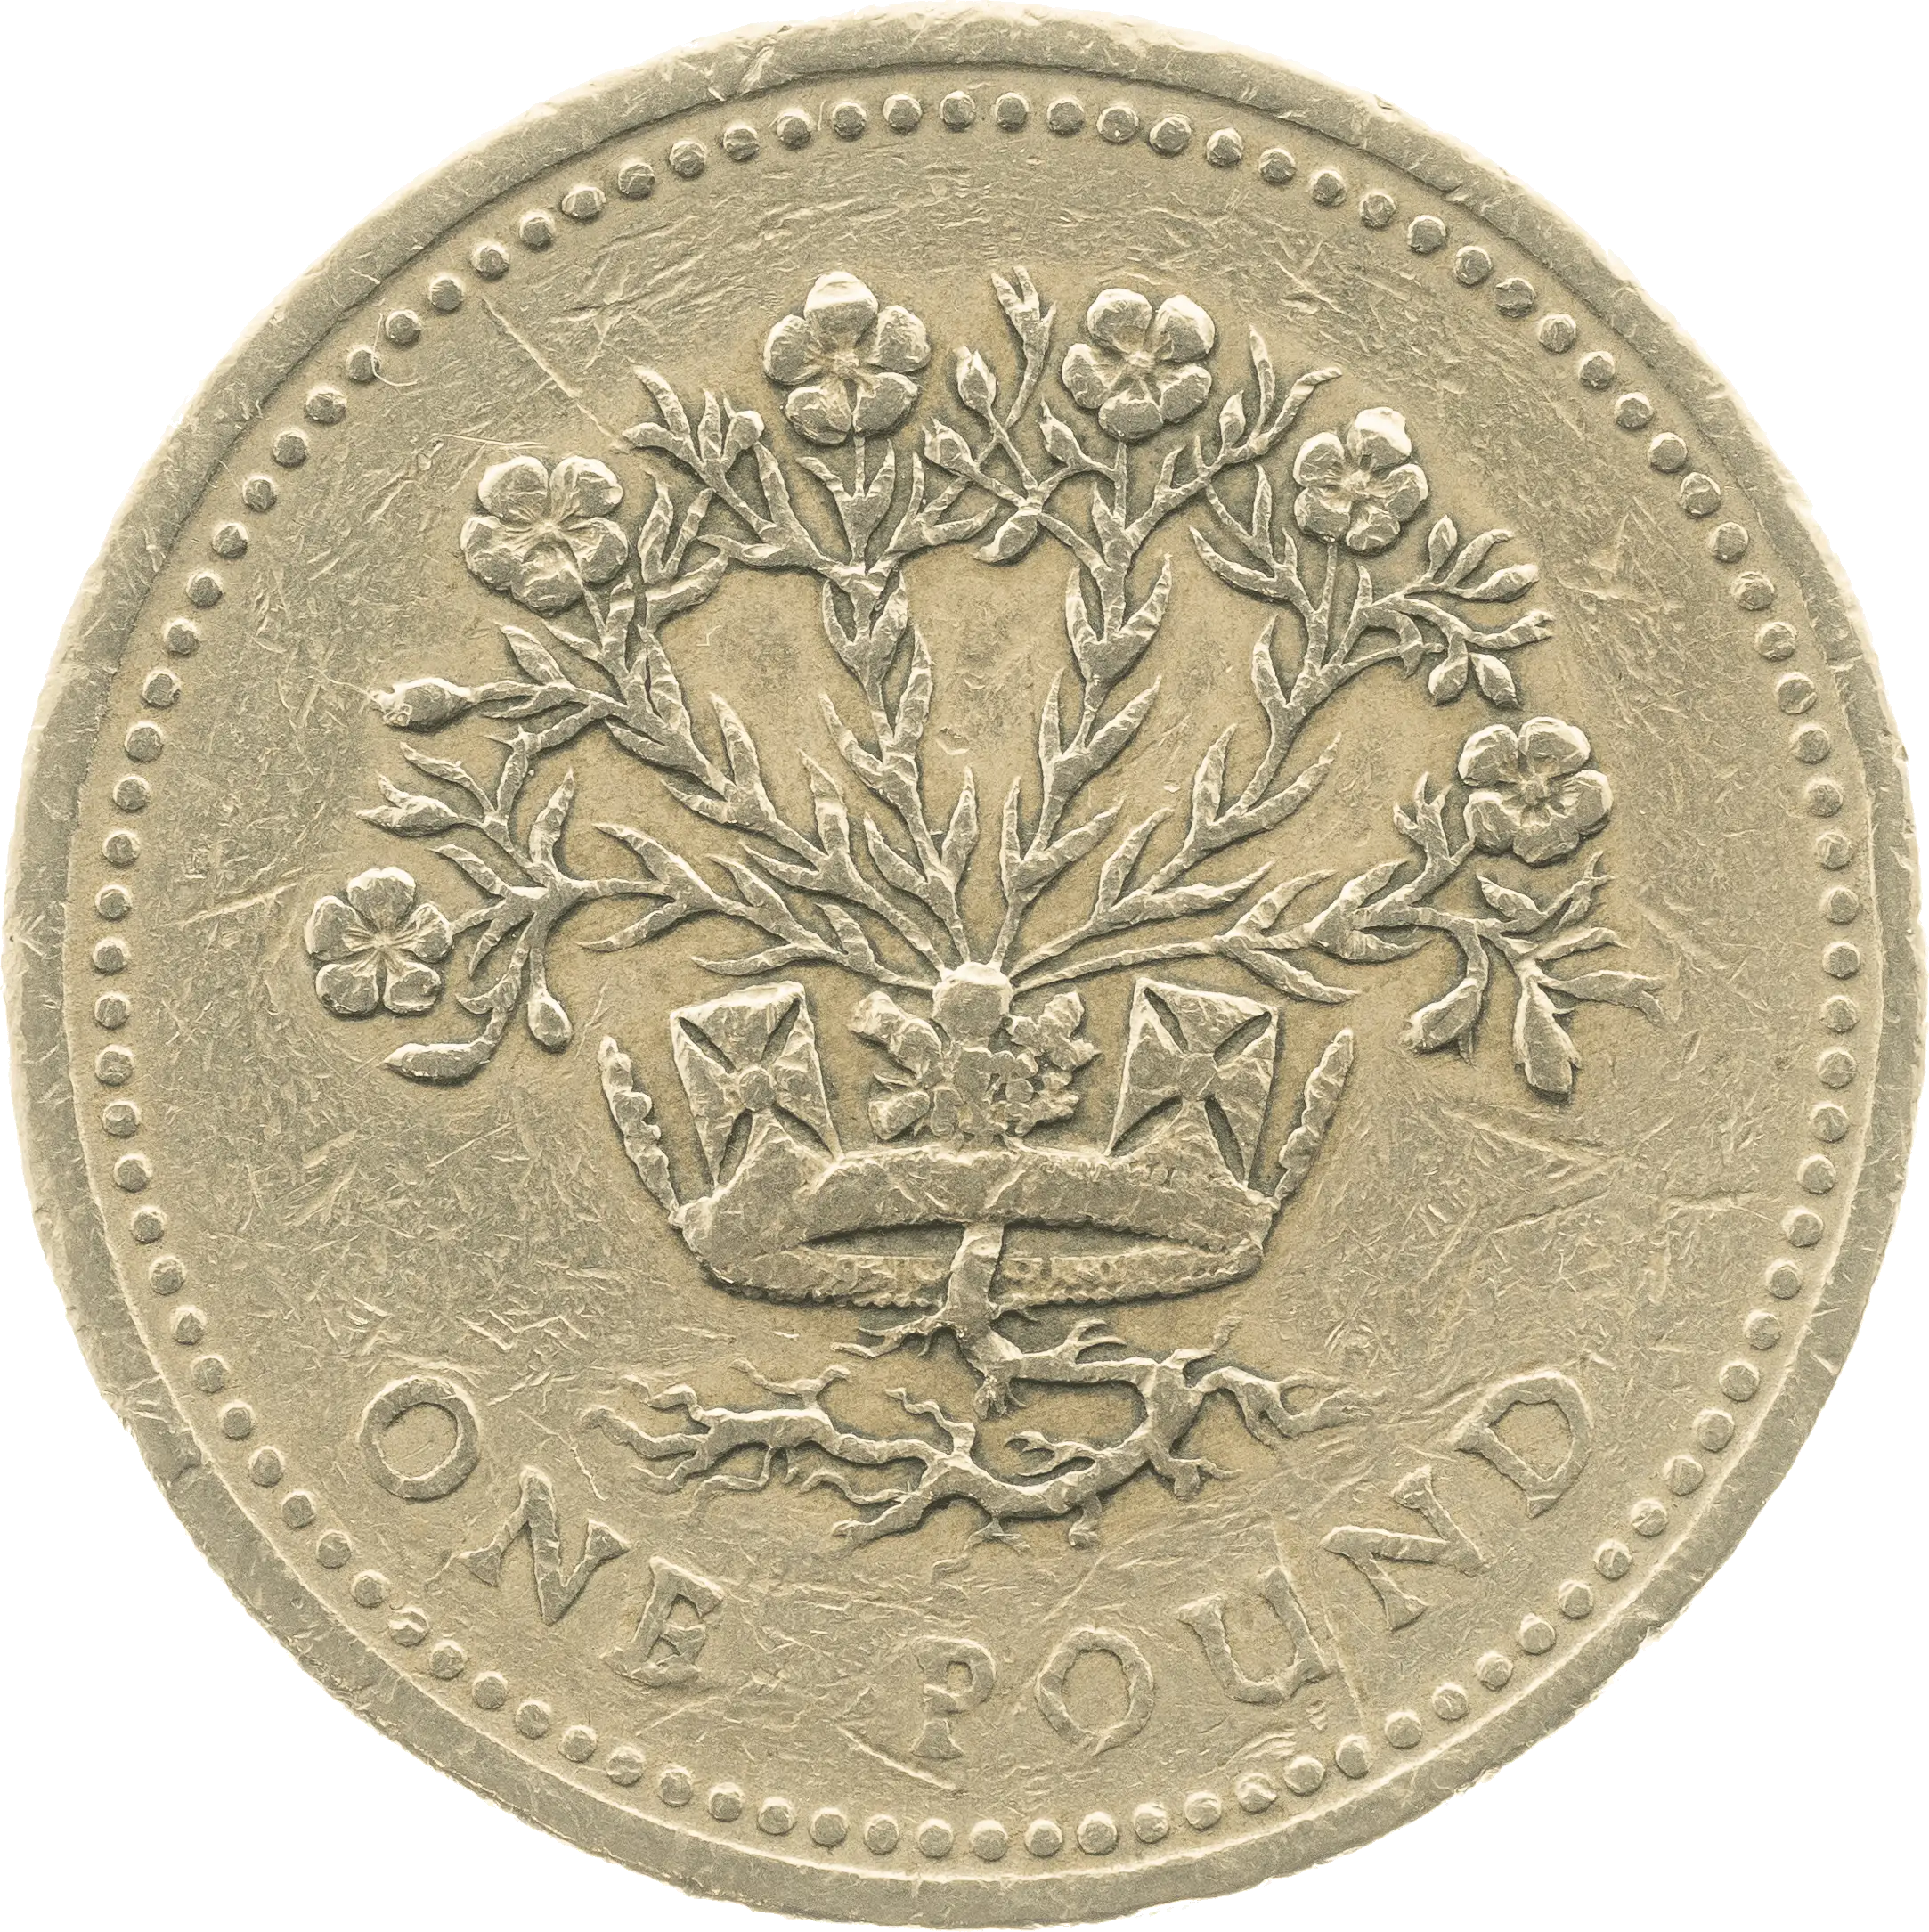 Flax £1 Coin Design